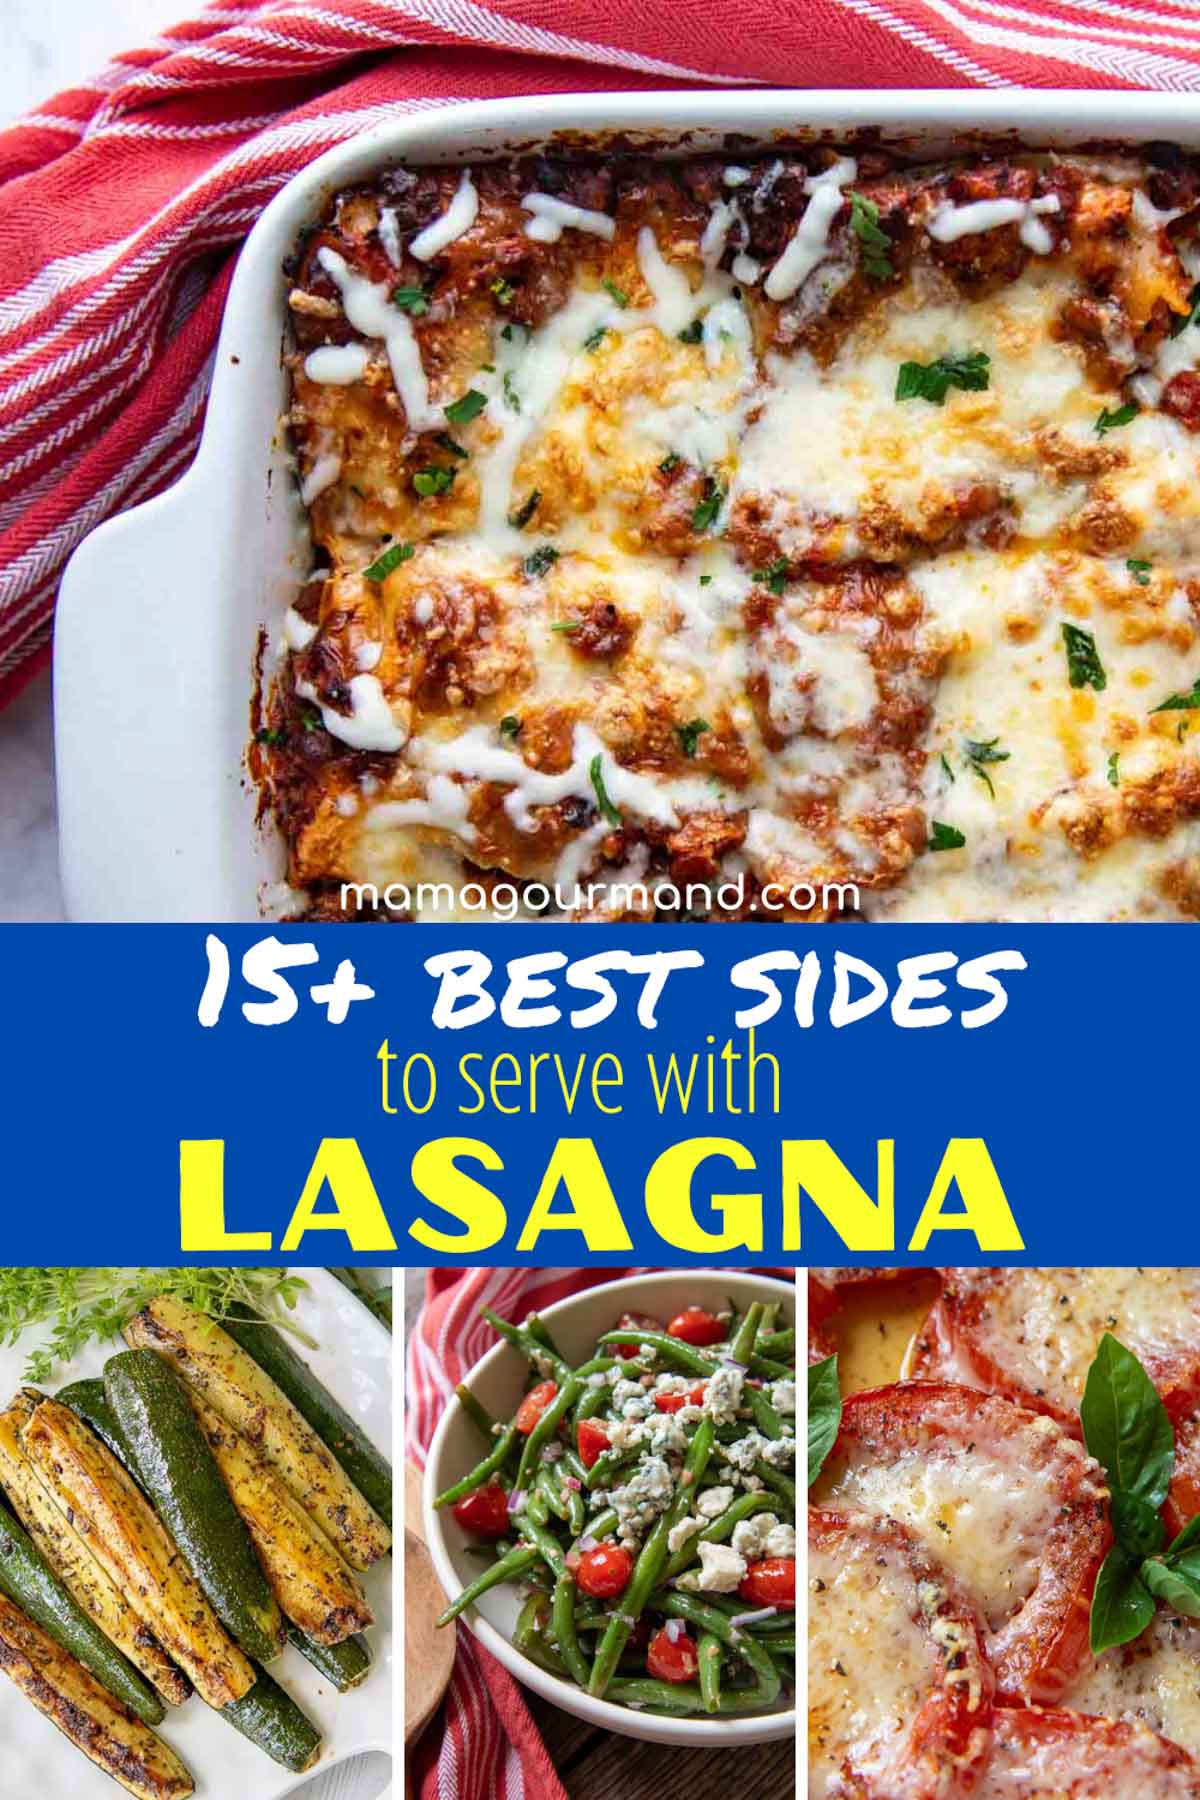 nyt år overfladisk presse 45+ Sides to Serve with Lasagna For All Occasions - Besides Salad